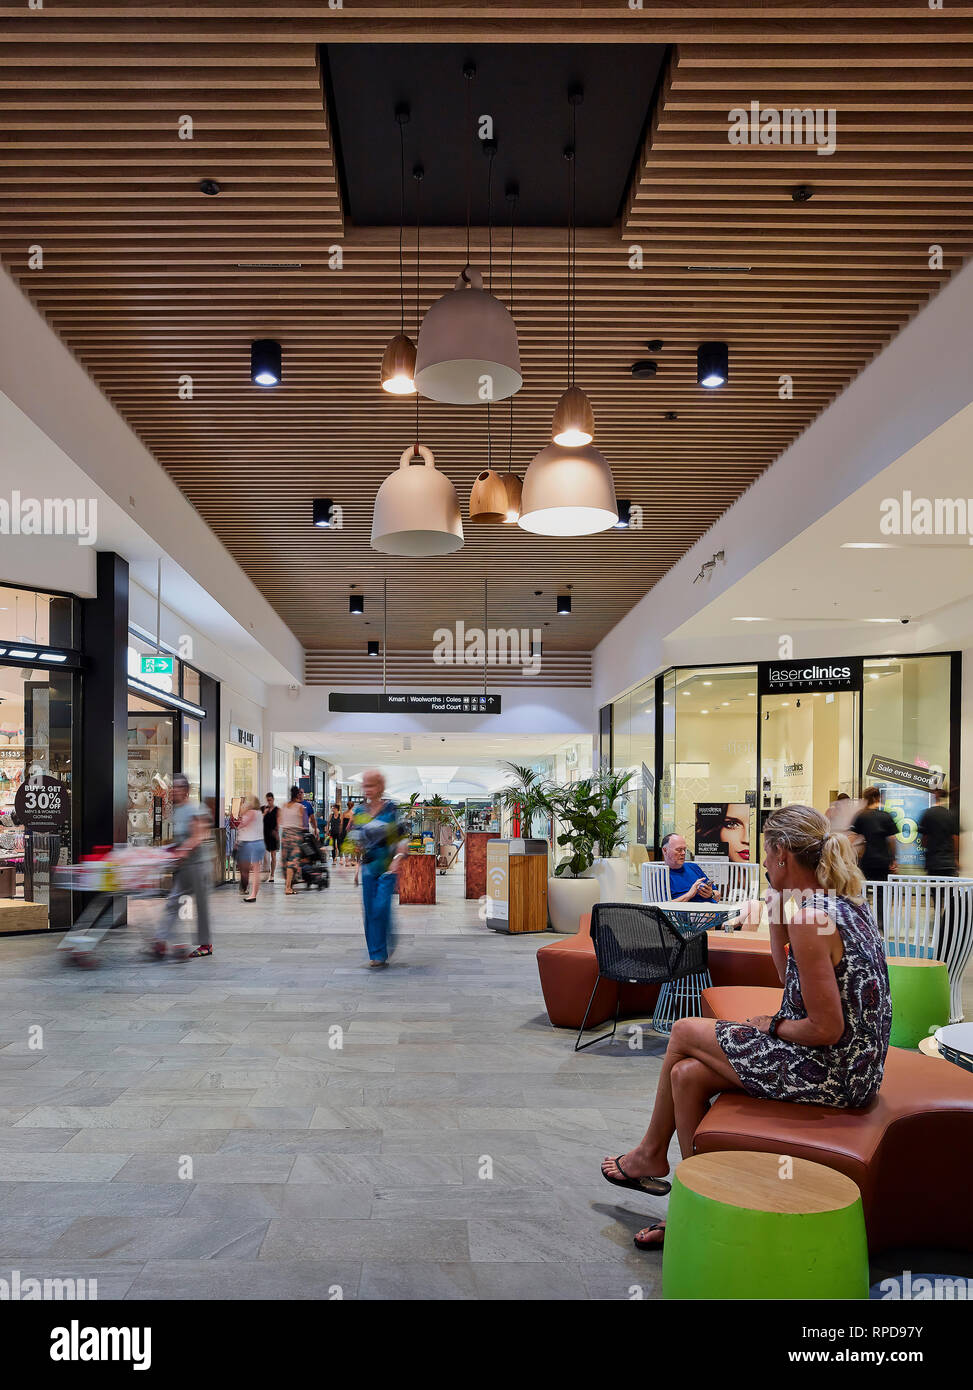 Centre commercial avec les mises à niveau et d'un nouvel éclairage au plafond et un coin salon. Warriewood Square, Sydney, Australie. Architecte : BN Group, 2019. Banque D'Images